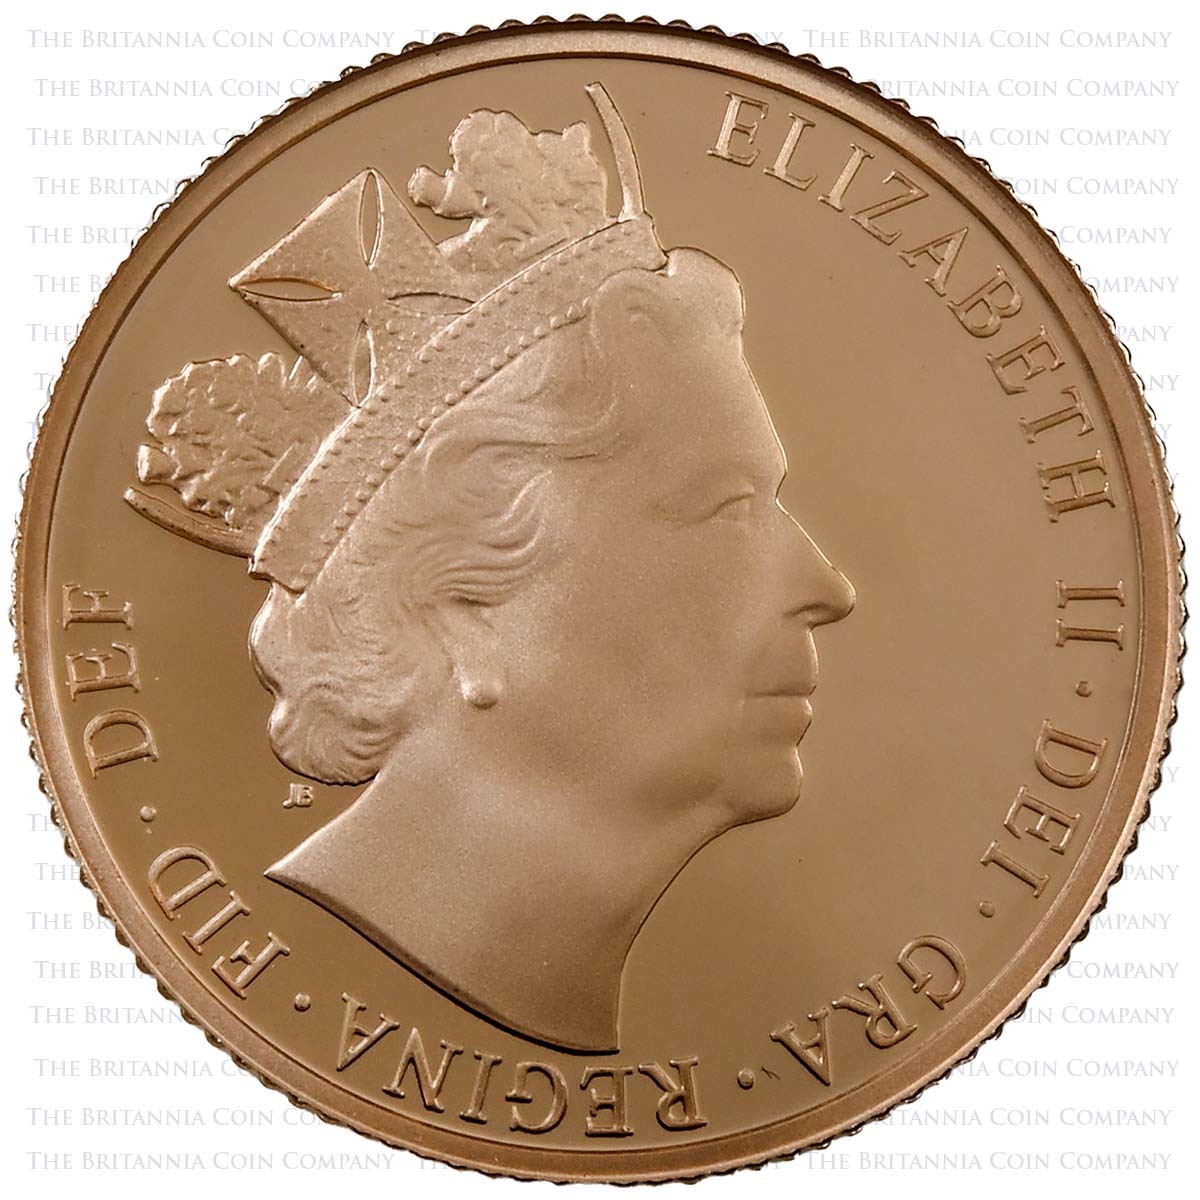 2016 Elizabeth II Gold Proof Sovereign James Butler Obverse